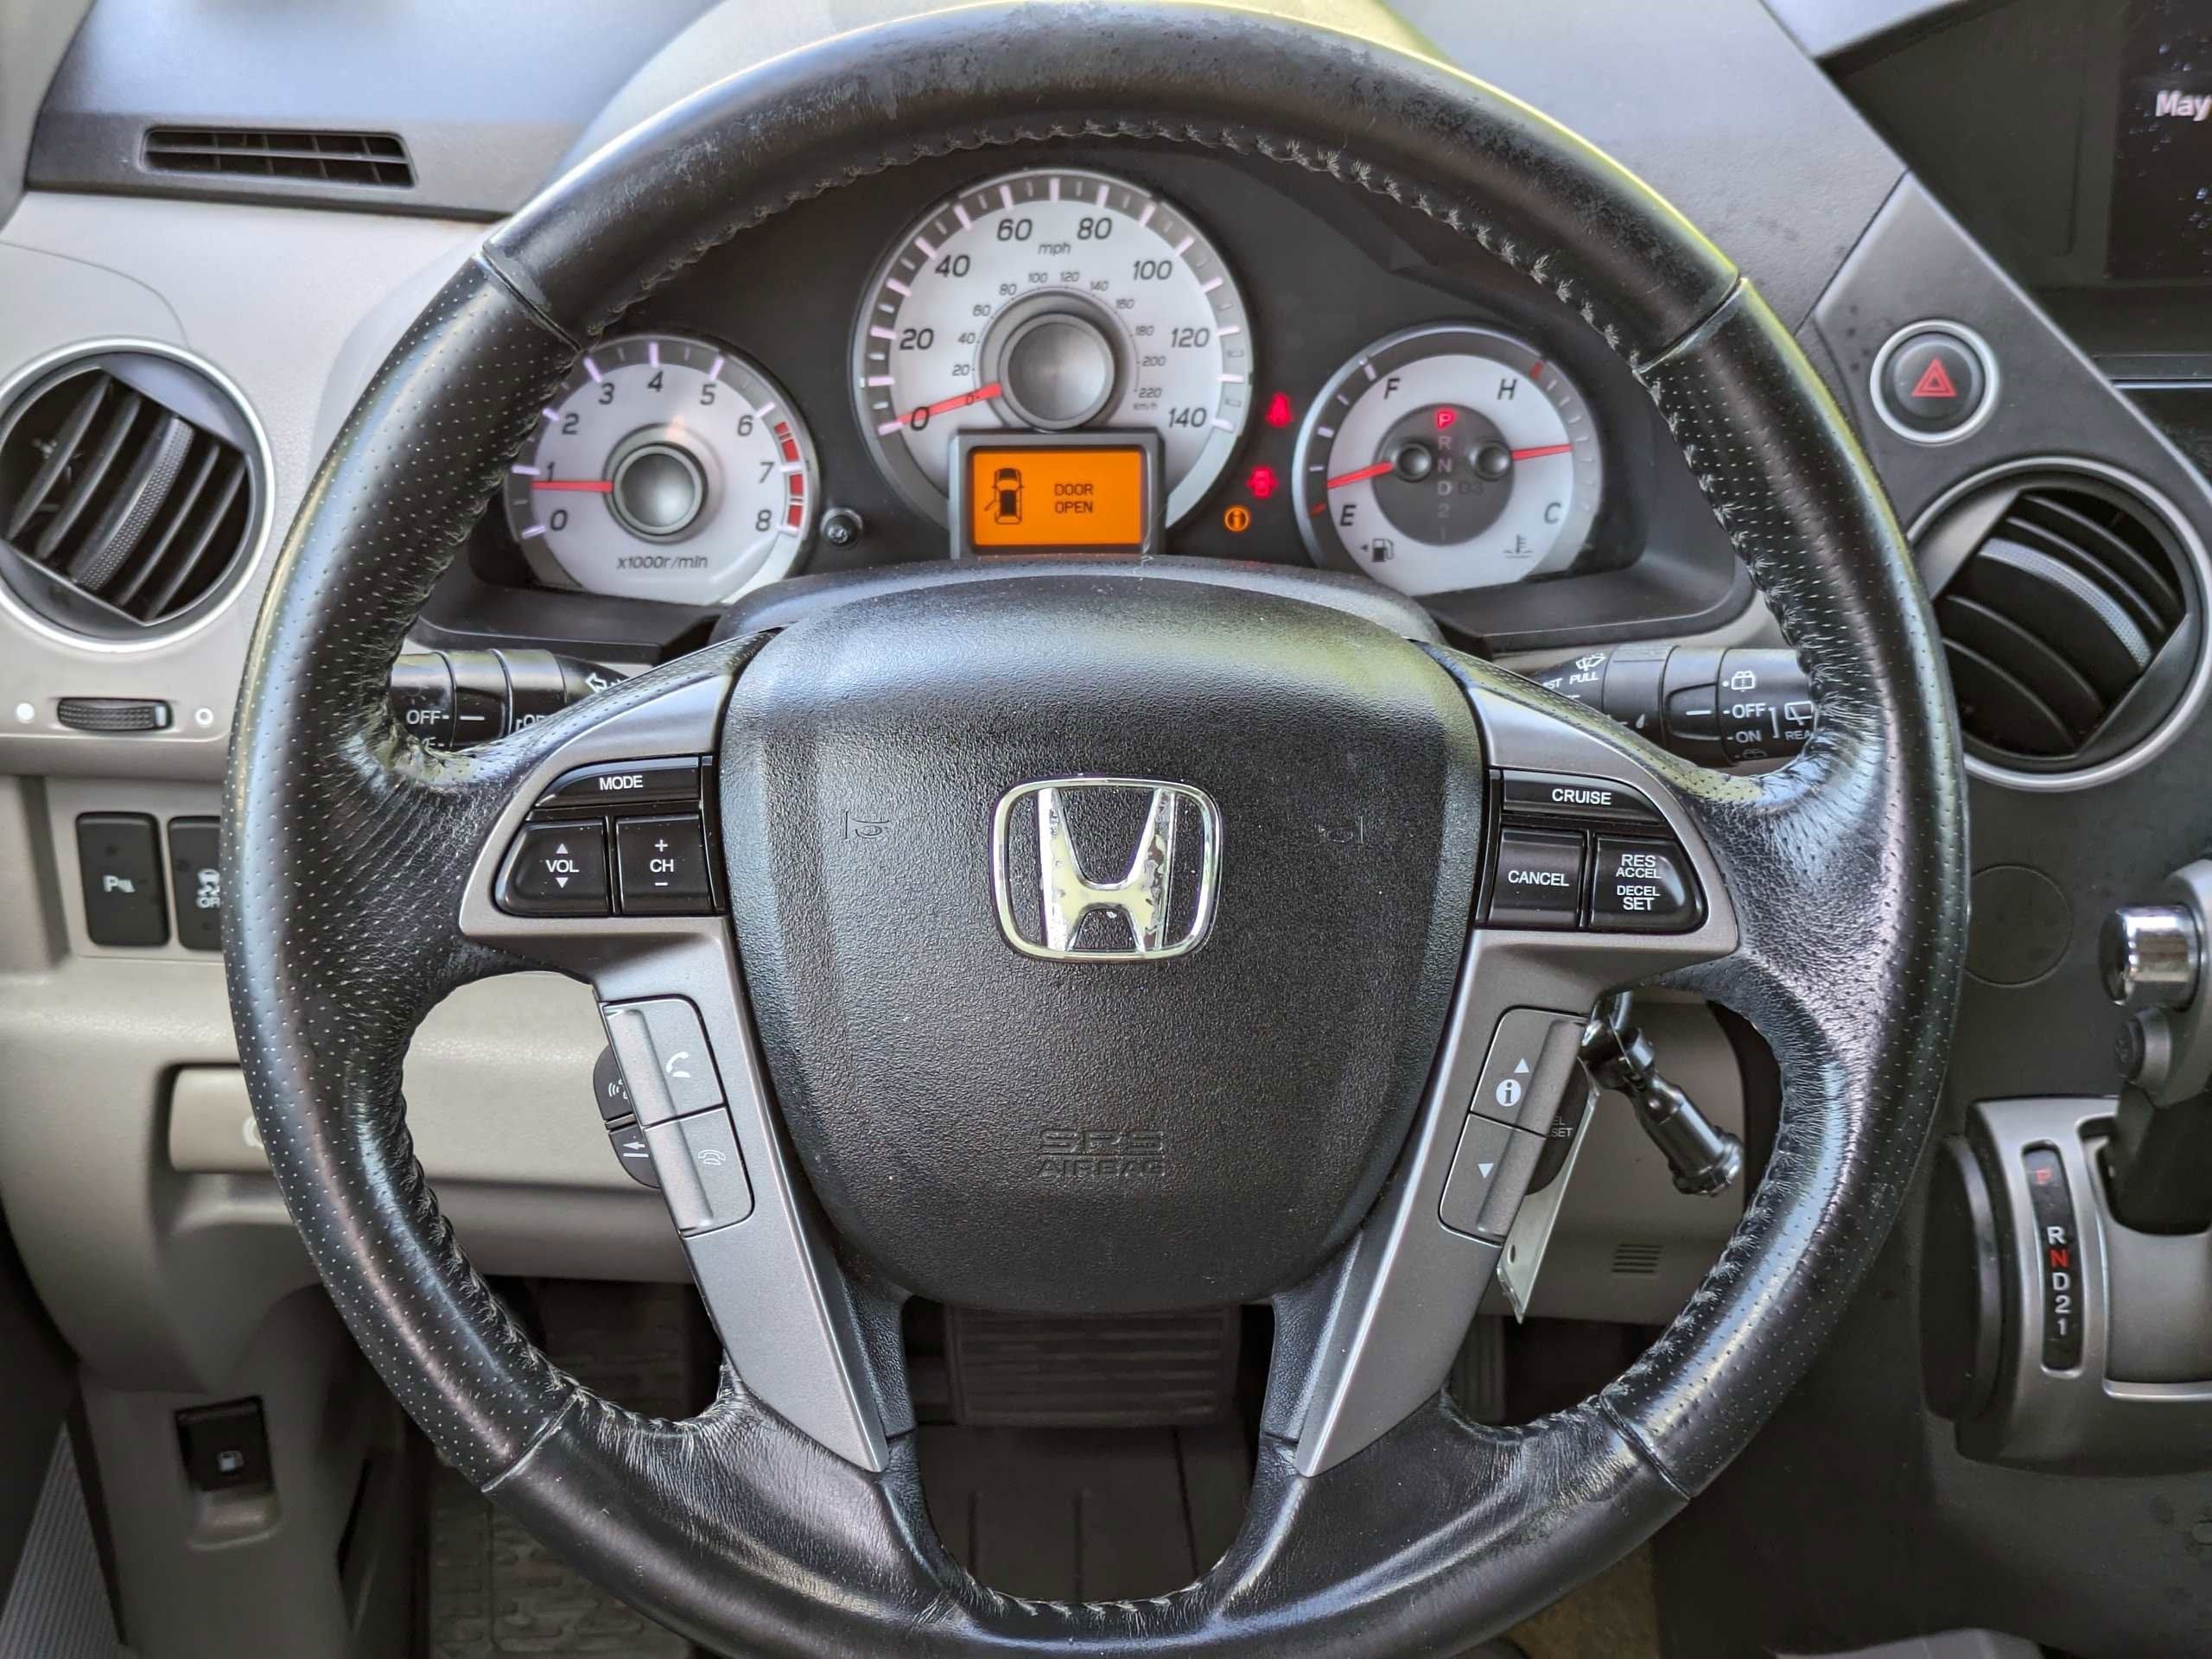 2013 Honda Pilot Touring